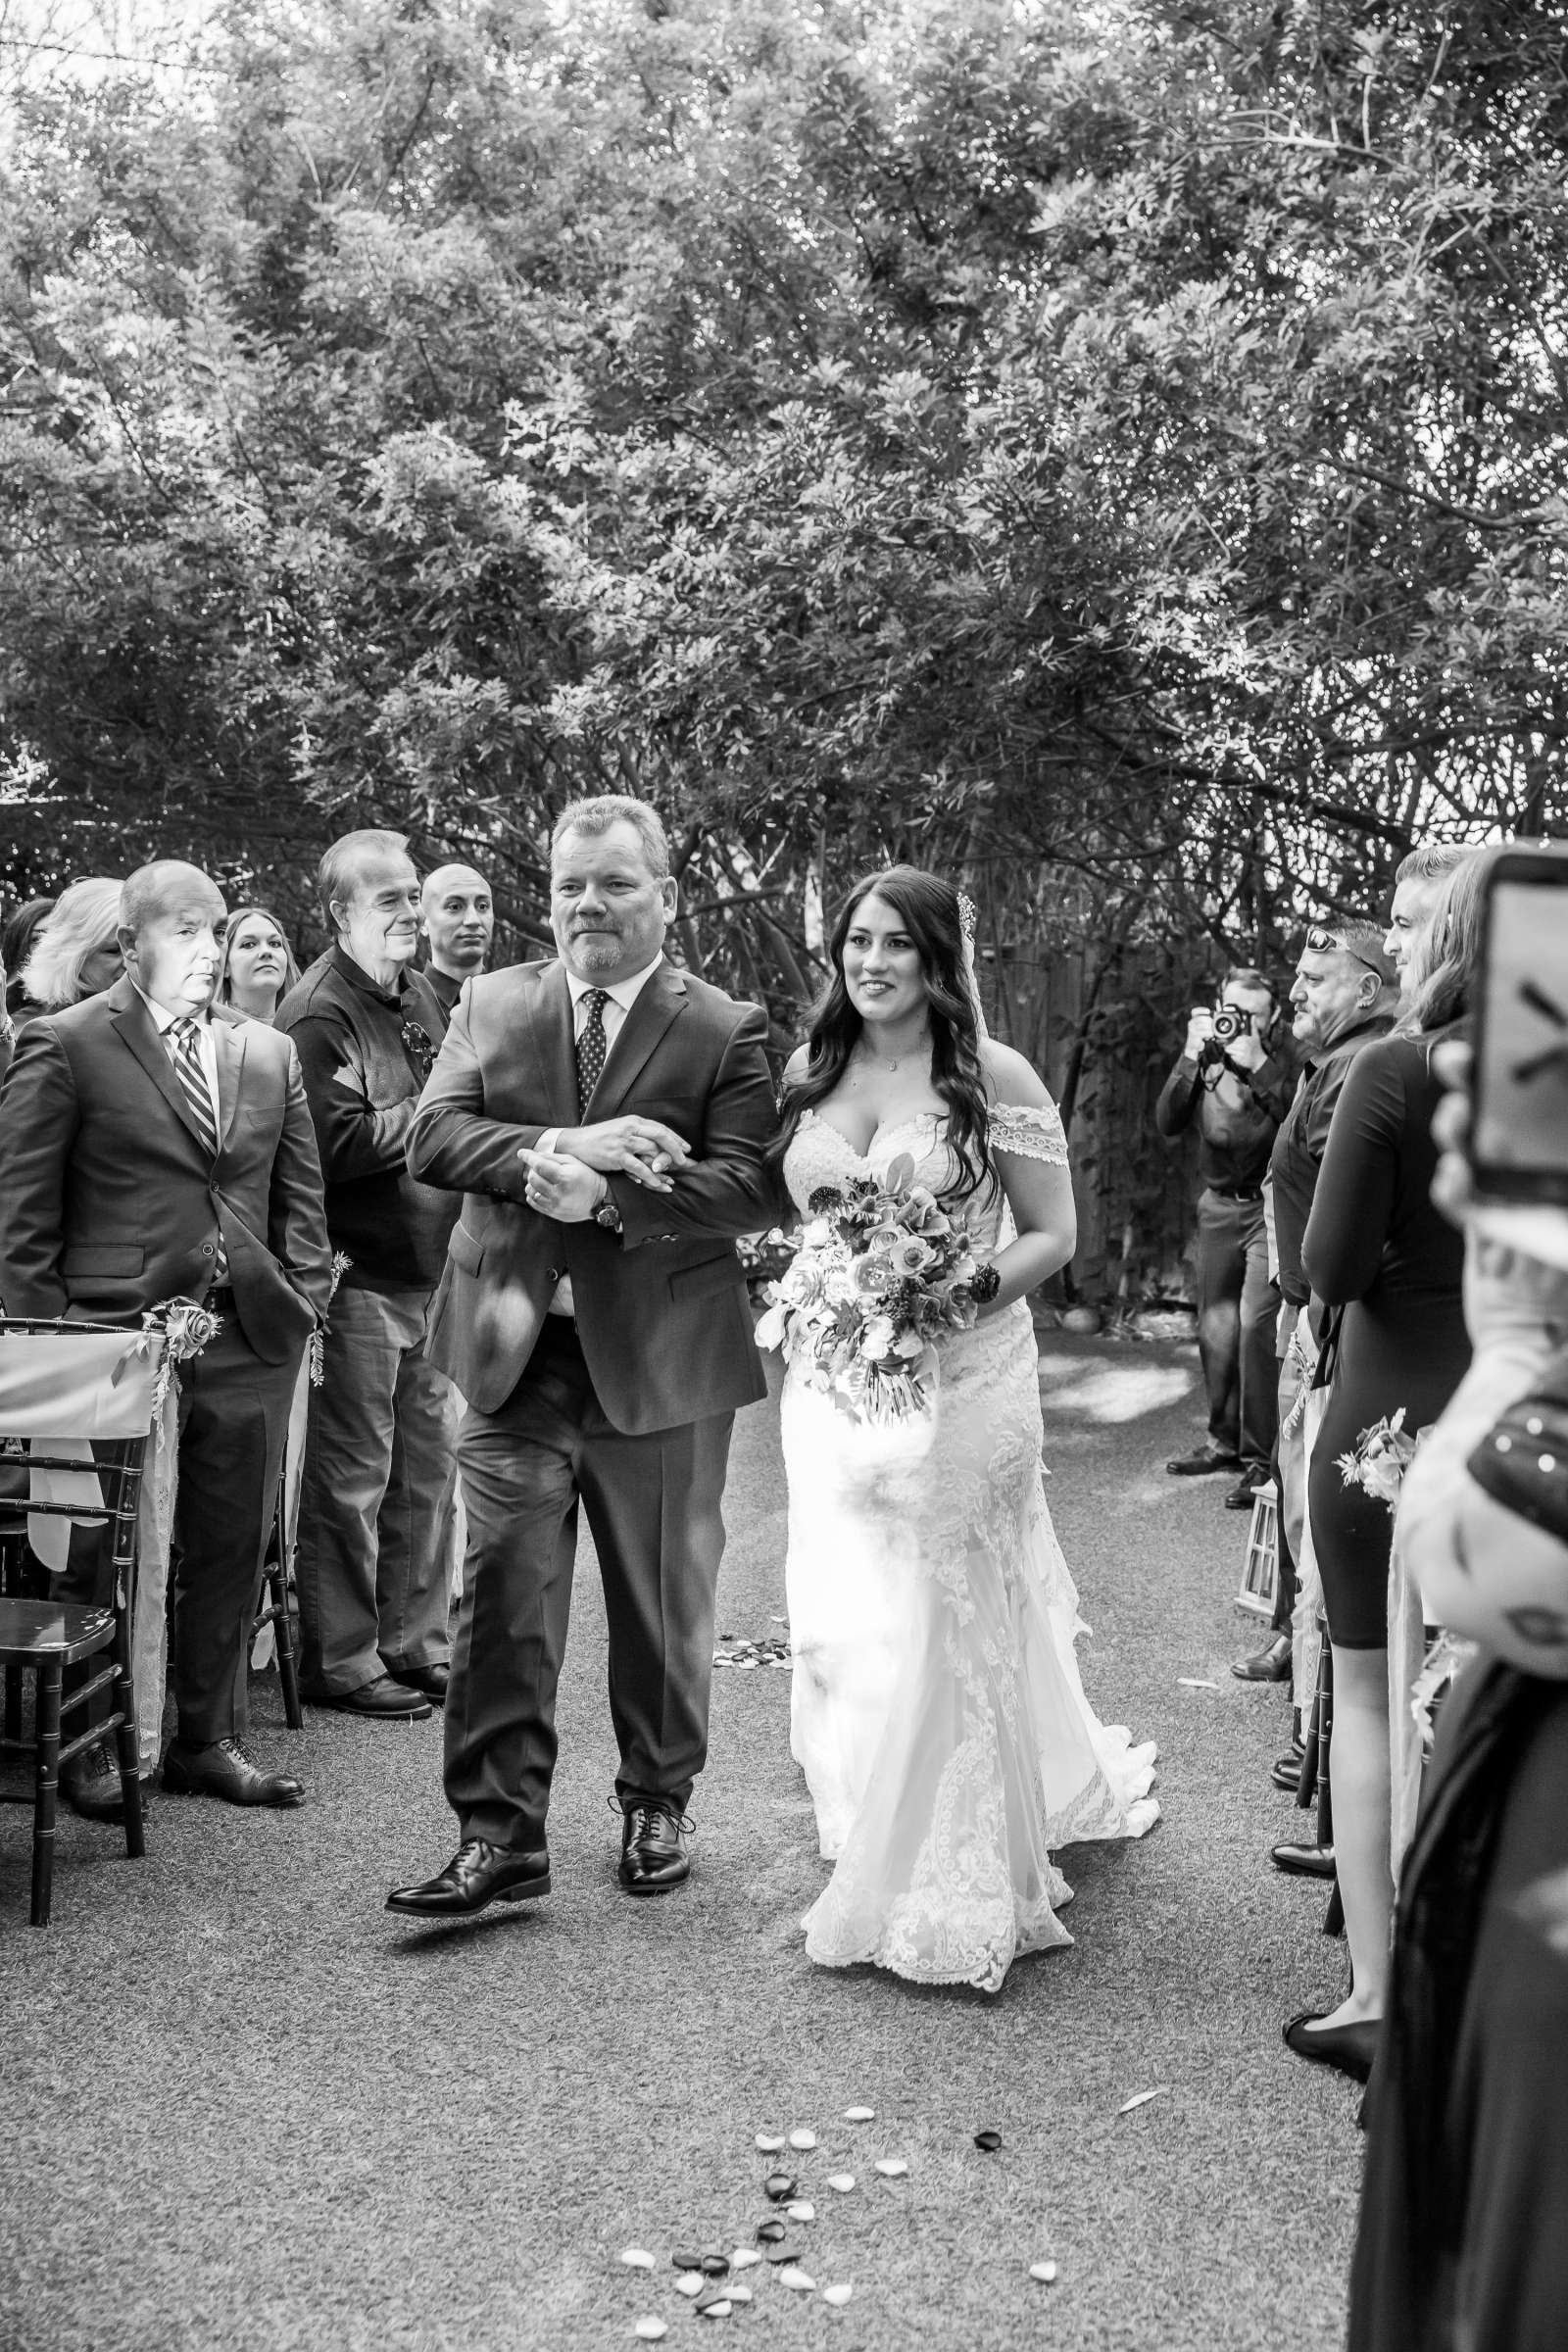 Twin Oaks House & Gardens Wedding Estate Wedding, Stephanie and Ilija Wedding Photo #65 by True Photography